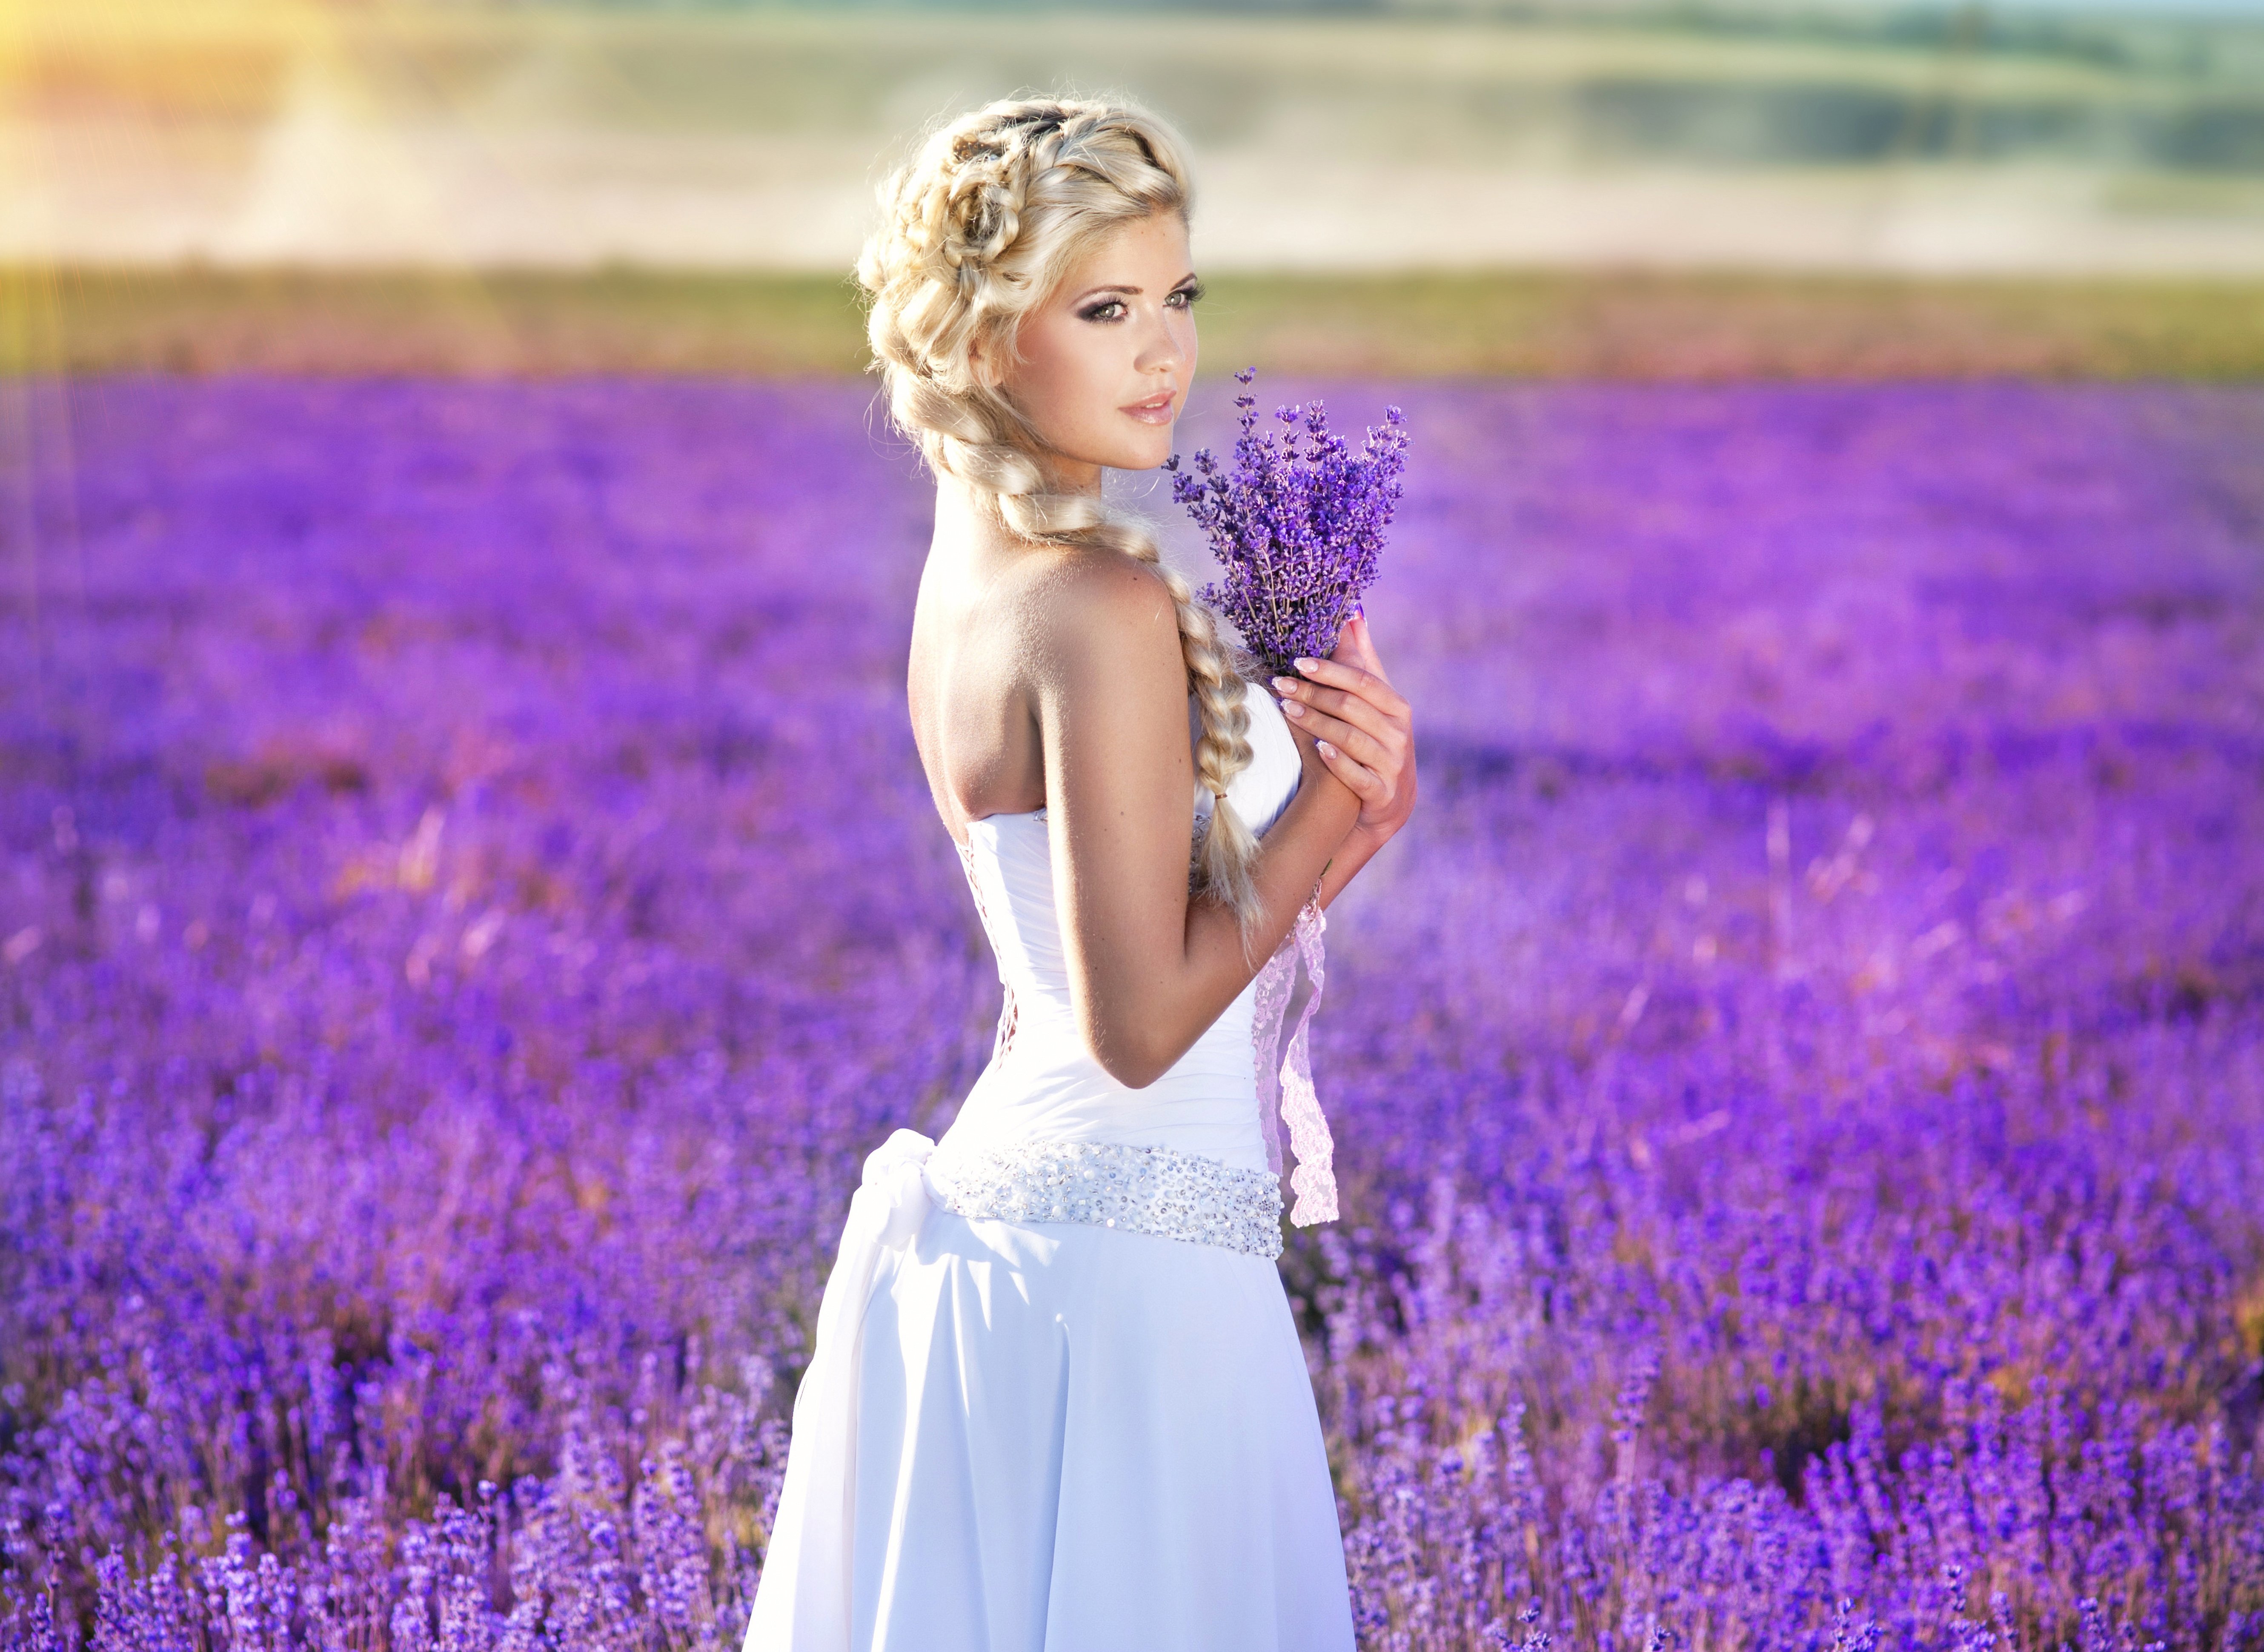 Bouquet Bride Dress Flower Lavender Plait Wedding Dress 5319x3881